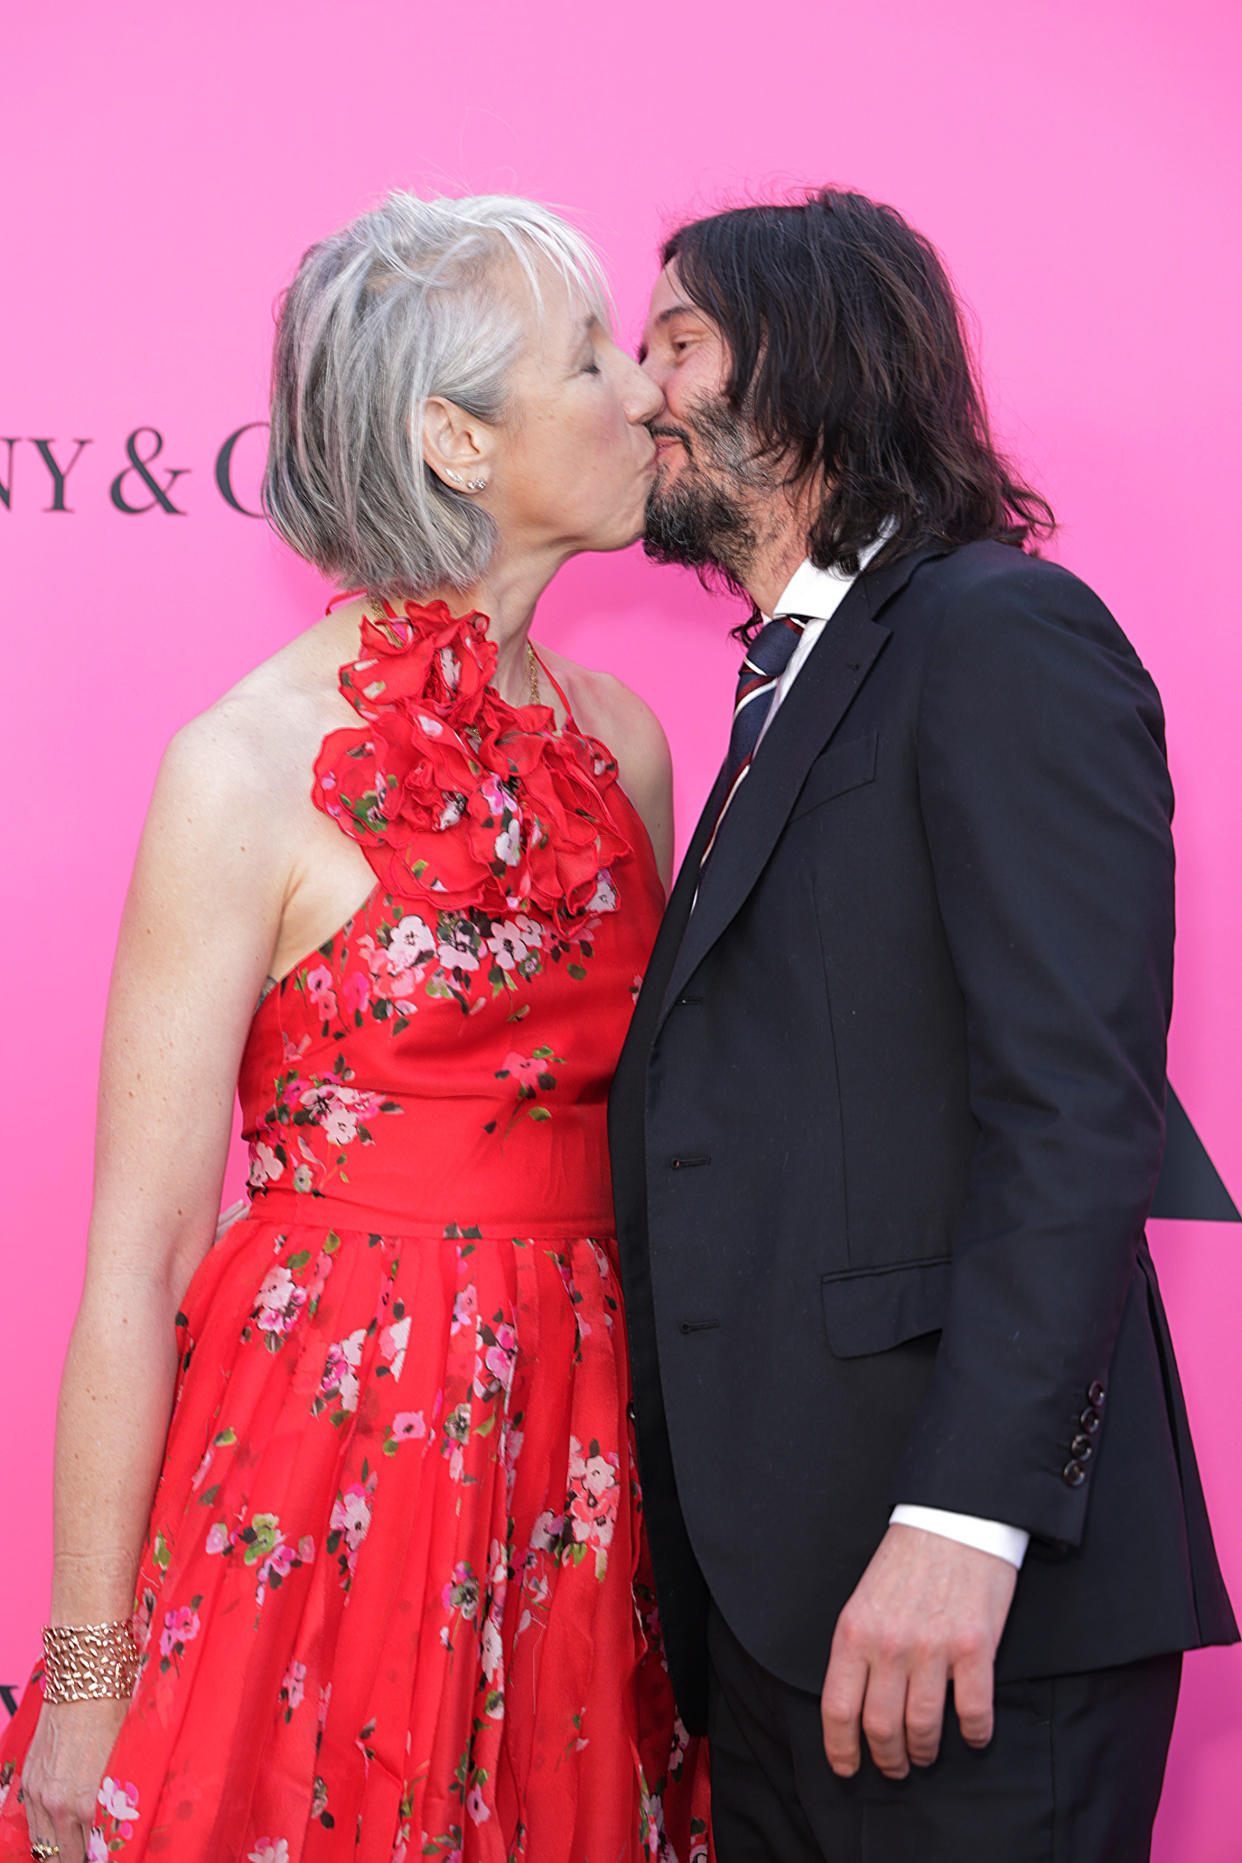 Keanu Reeves küsst Freundin Alexandra auf dem roten Teppich (Bild: Momodu Mansaray/WireImage)